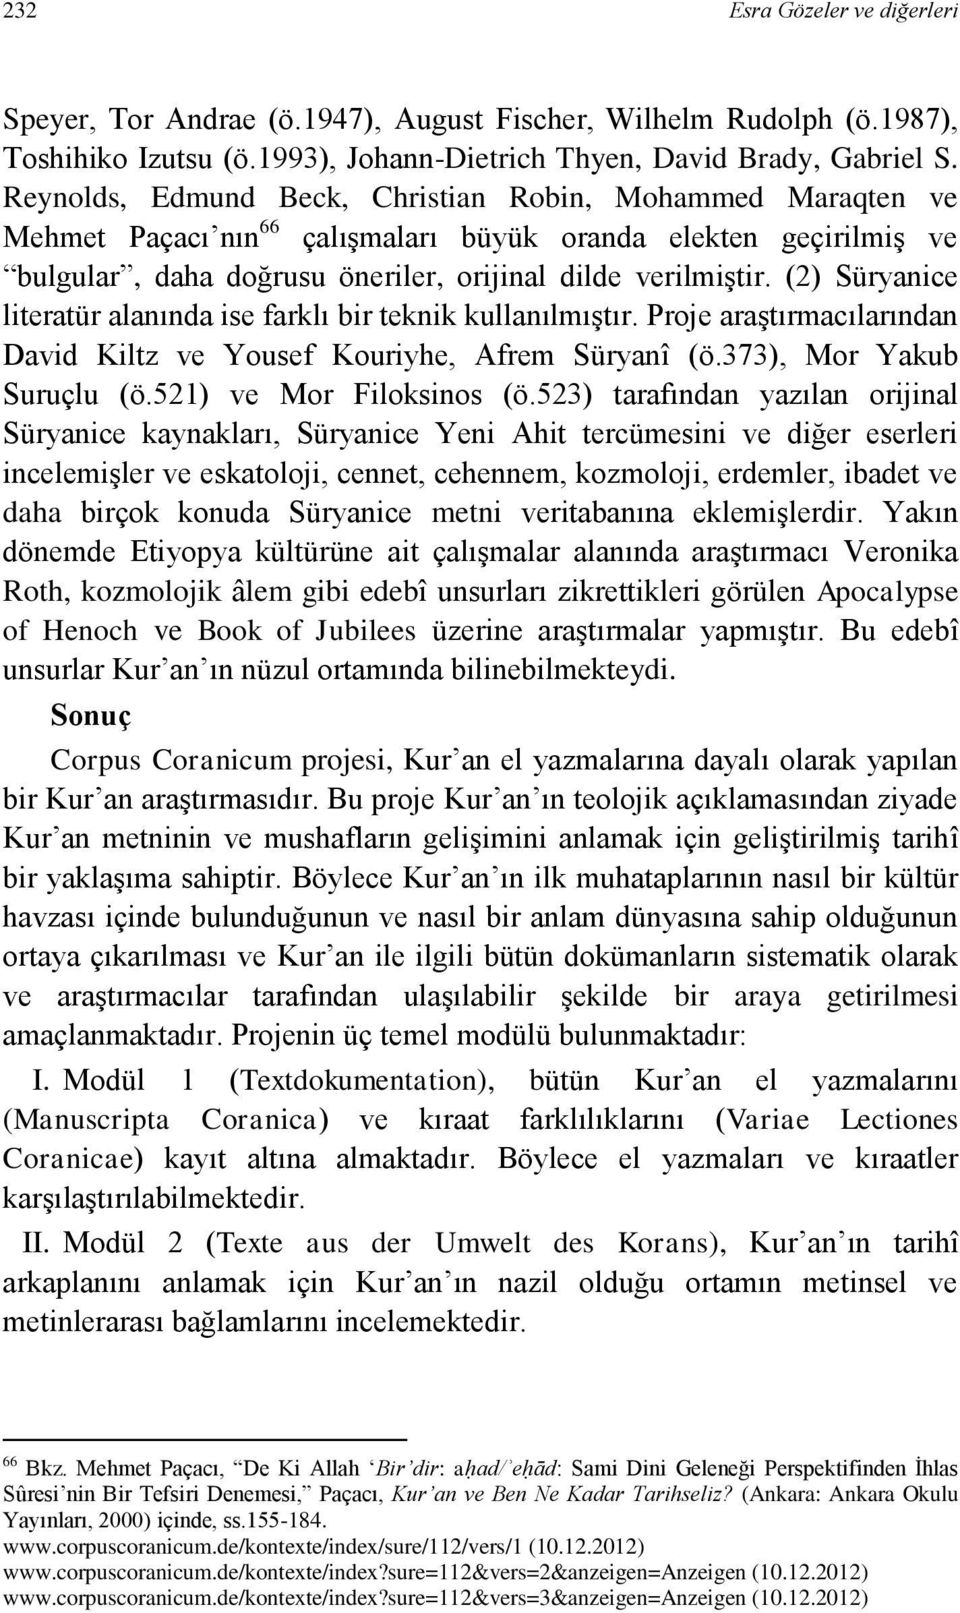 (2) Süryanice literatür alanında ise farklı bir teknik kullanılmıştır. Proje araştırmacılarından David Kiltz ve Yousef Kouriyhe, Afrem Süryanî (ö.373), Mor Yakub Suruçlu (ö.521) ve Mor Filoksinos (ö.